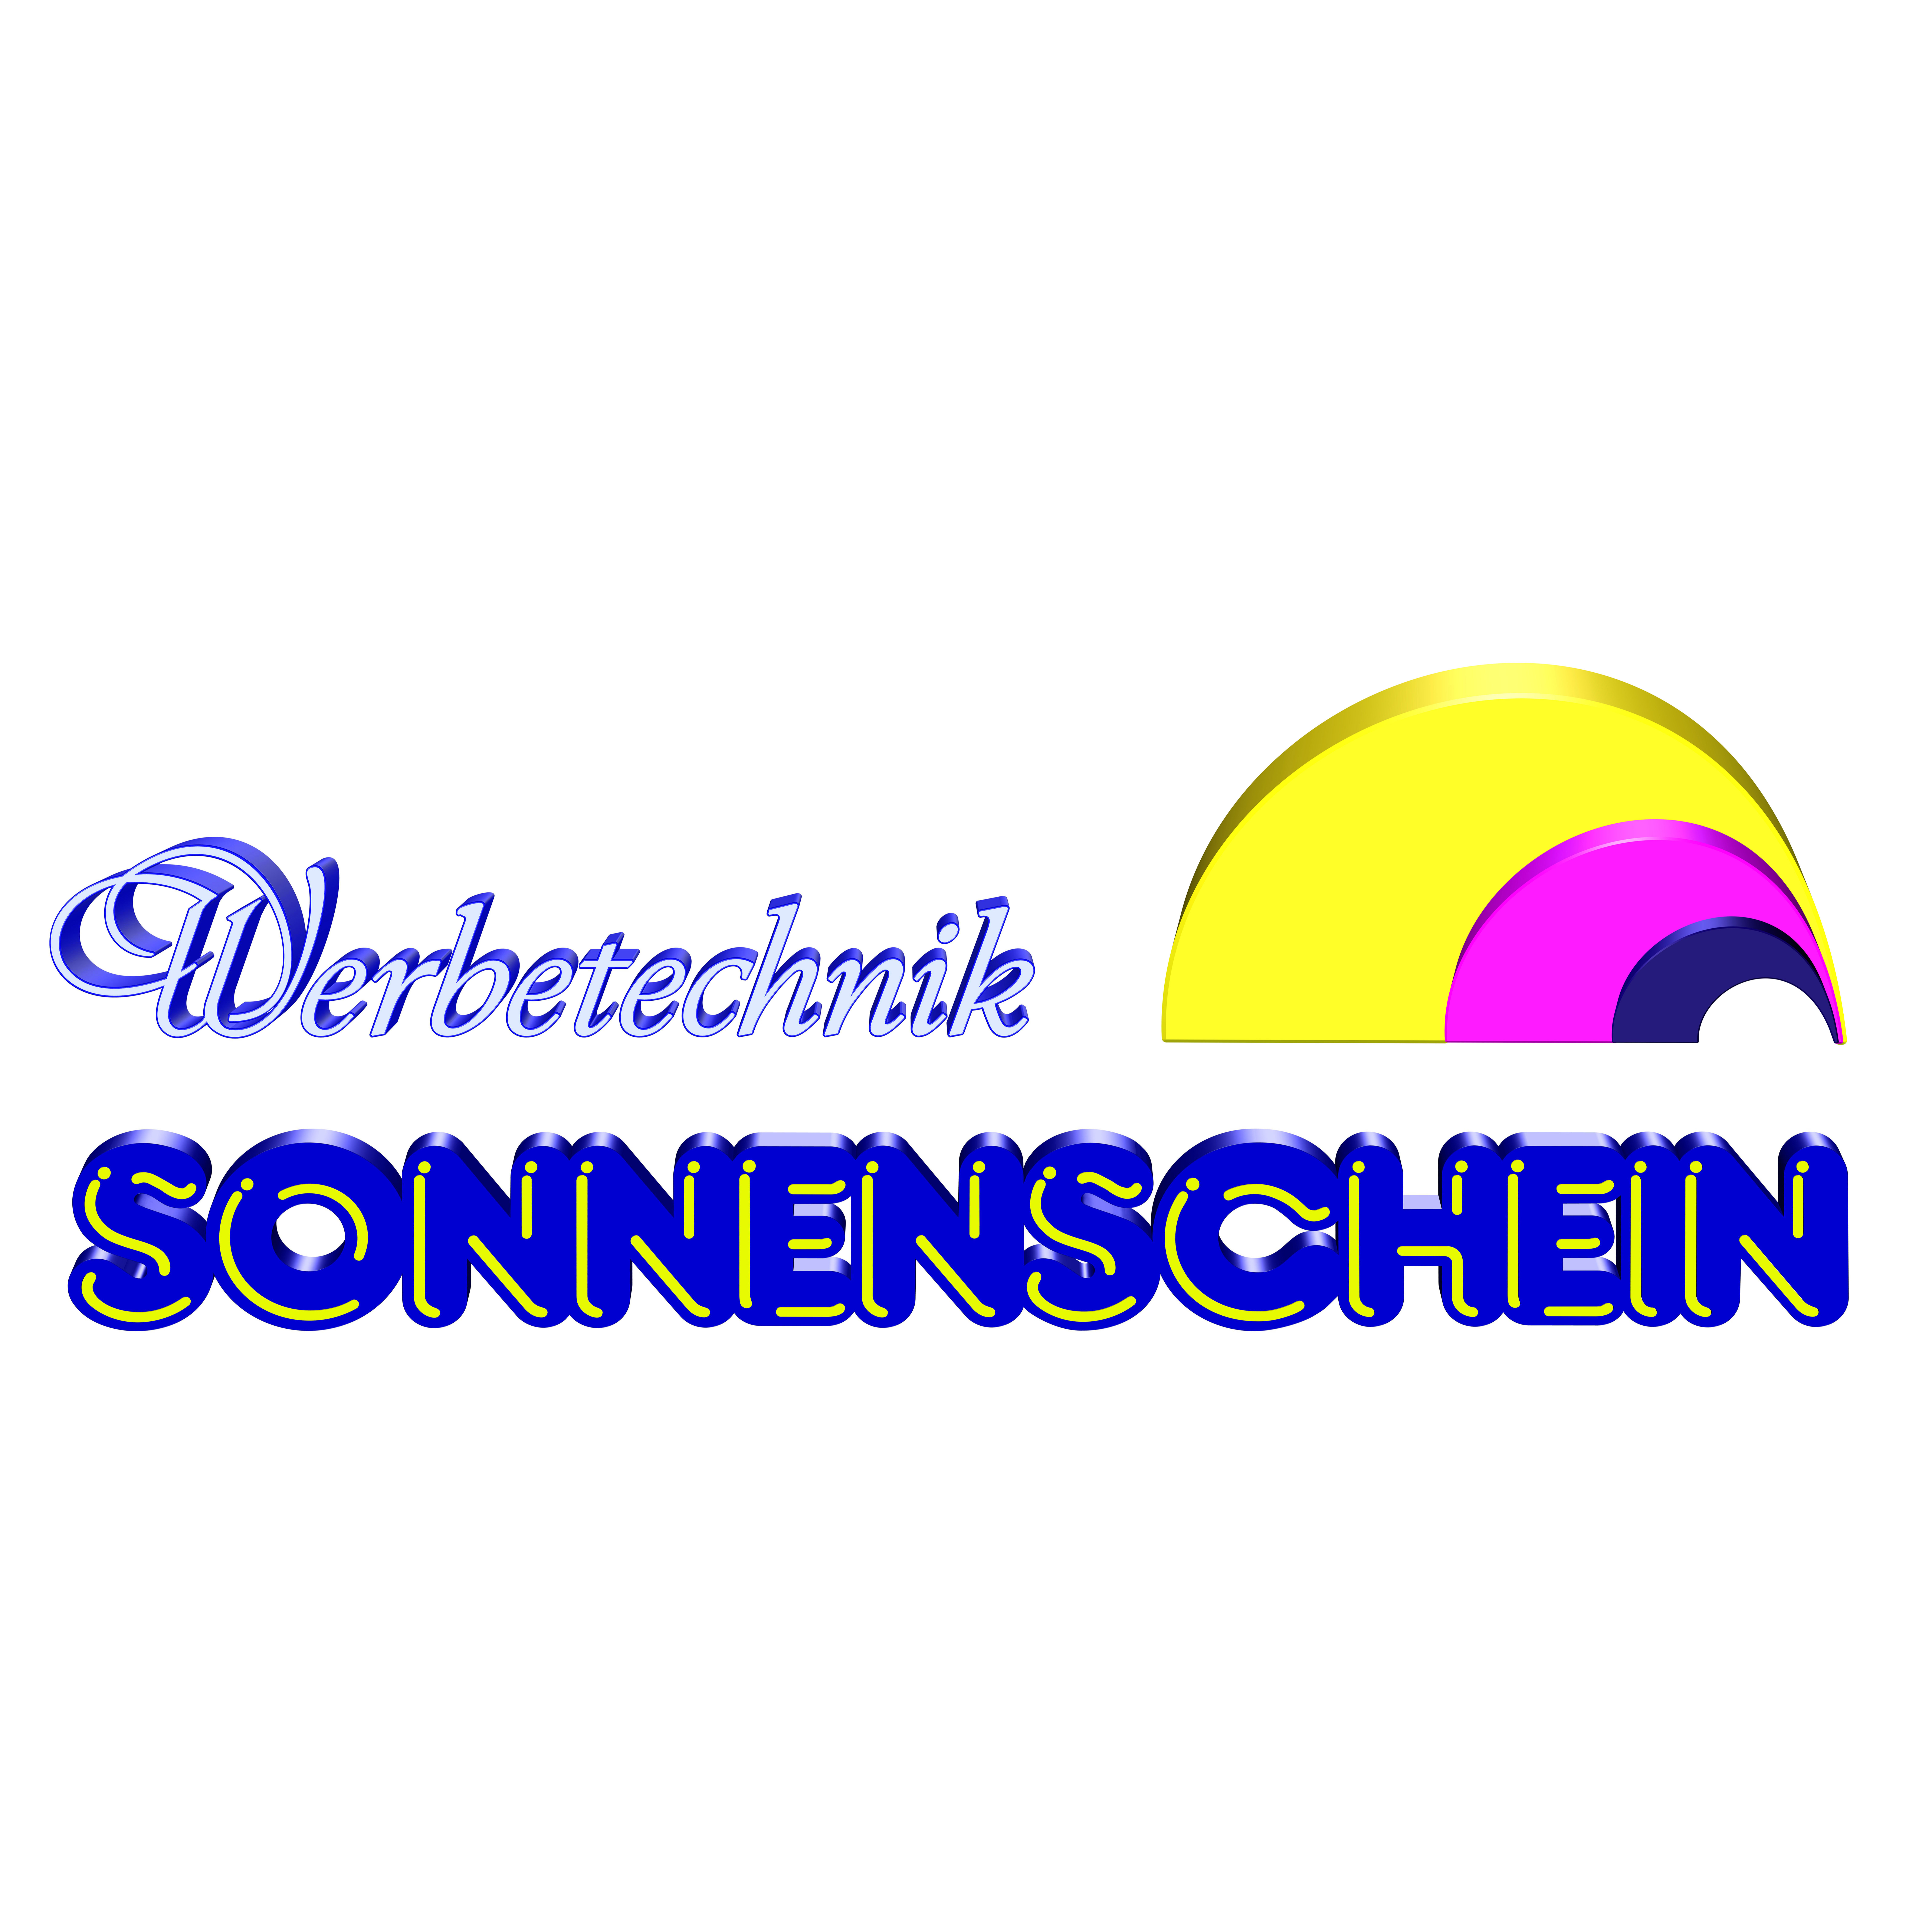 Werbetechnik Sonnenschein - Werbetechnik in Essen Logo